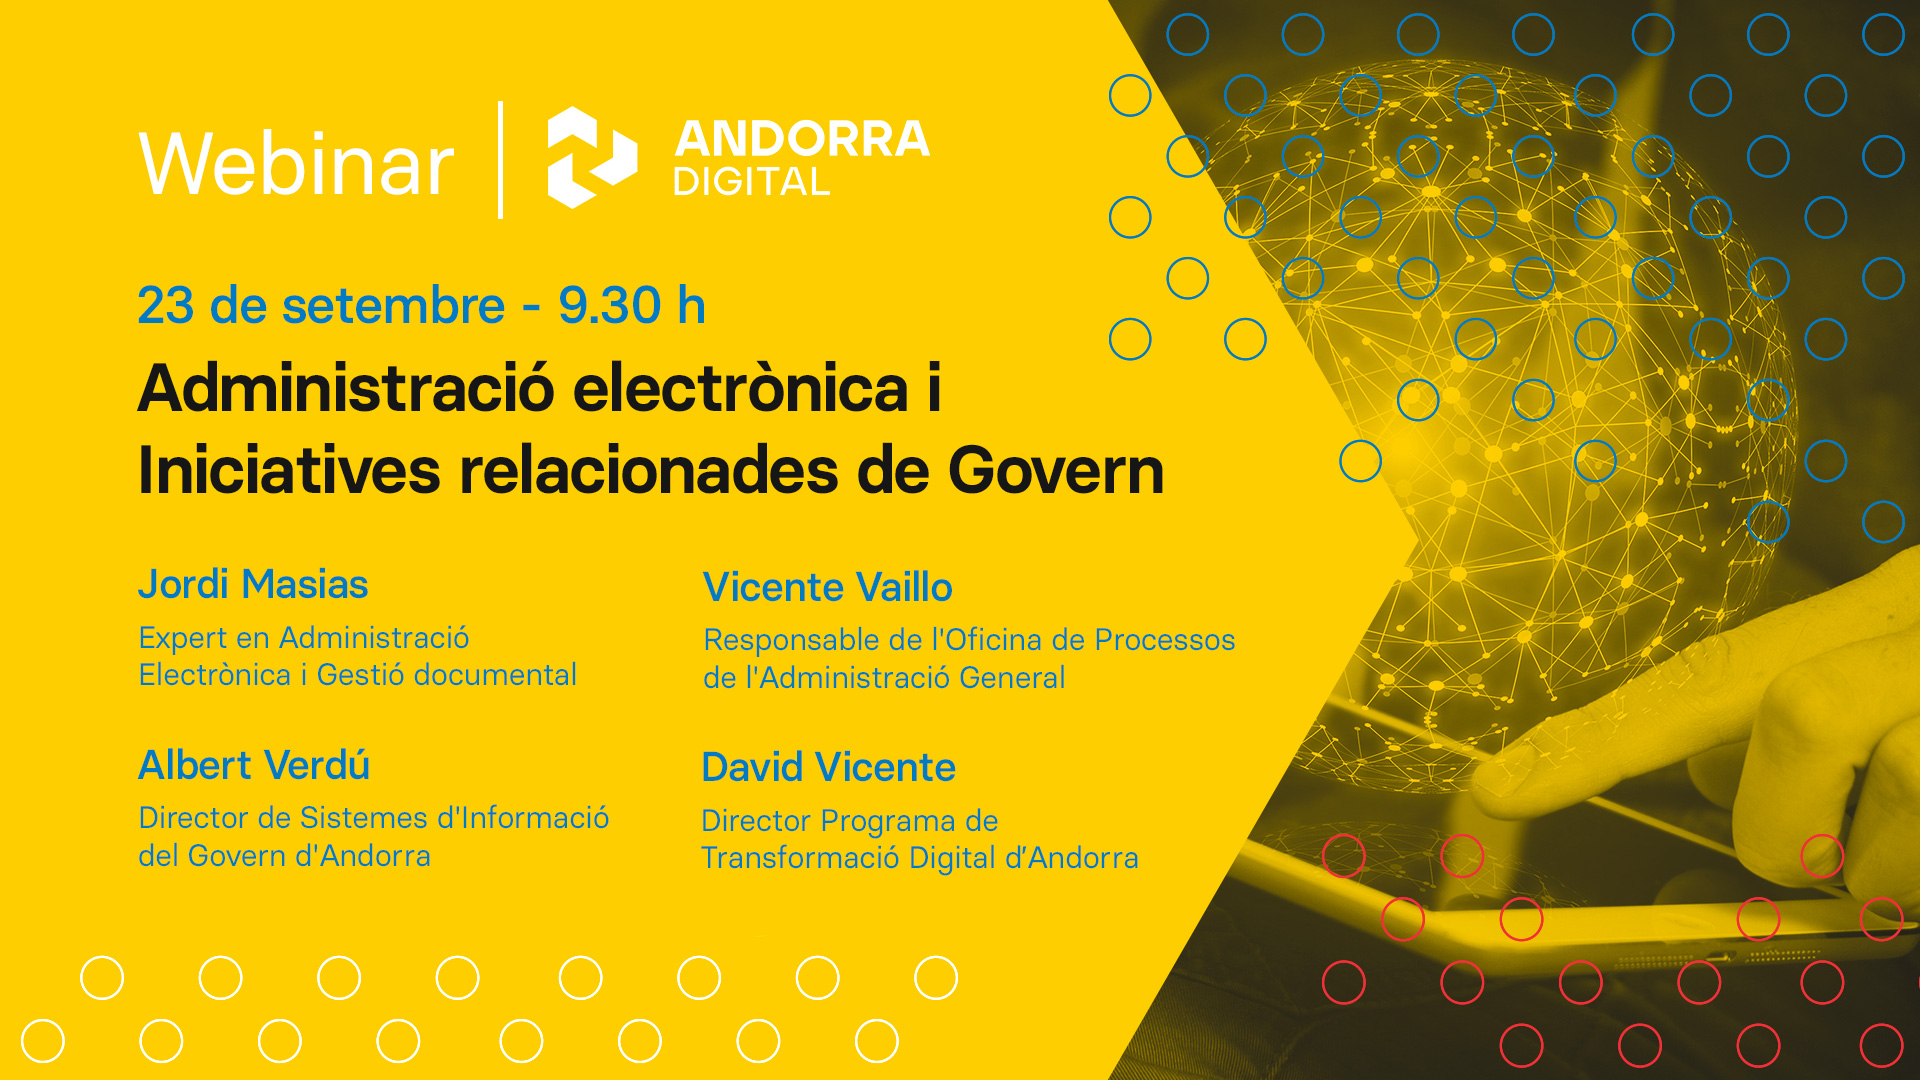 Webinar Andorra Digital - Administració electrònica i Iniciatives relacionades de Govern